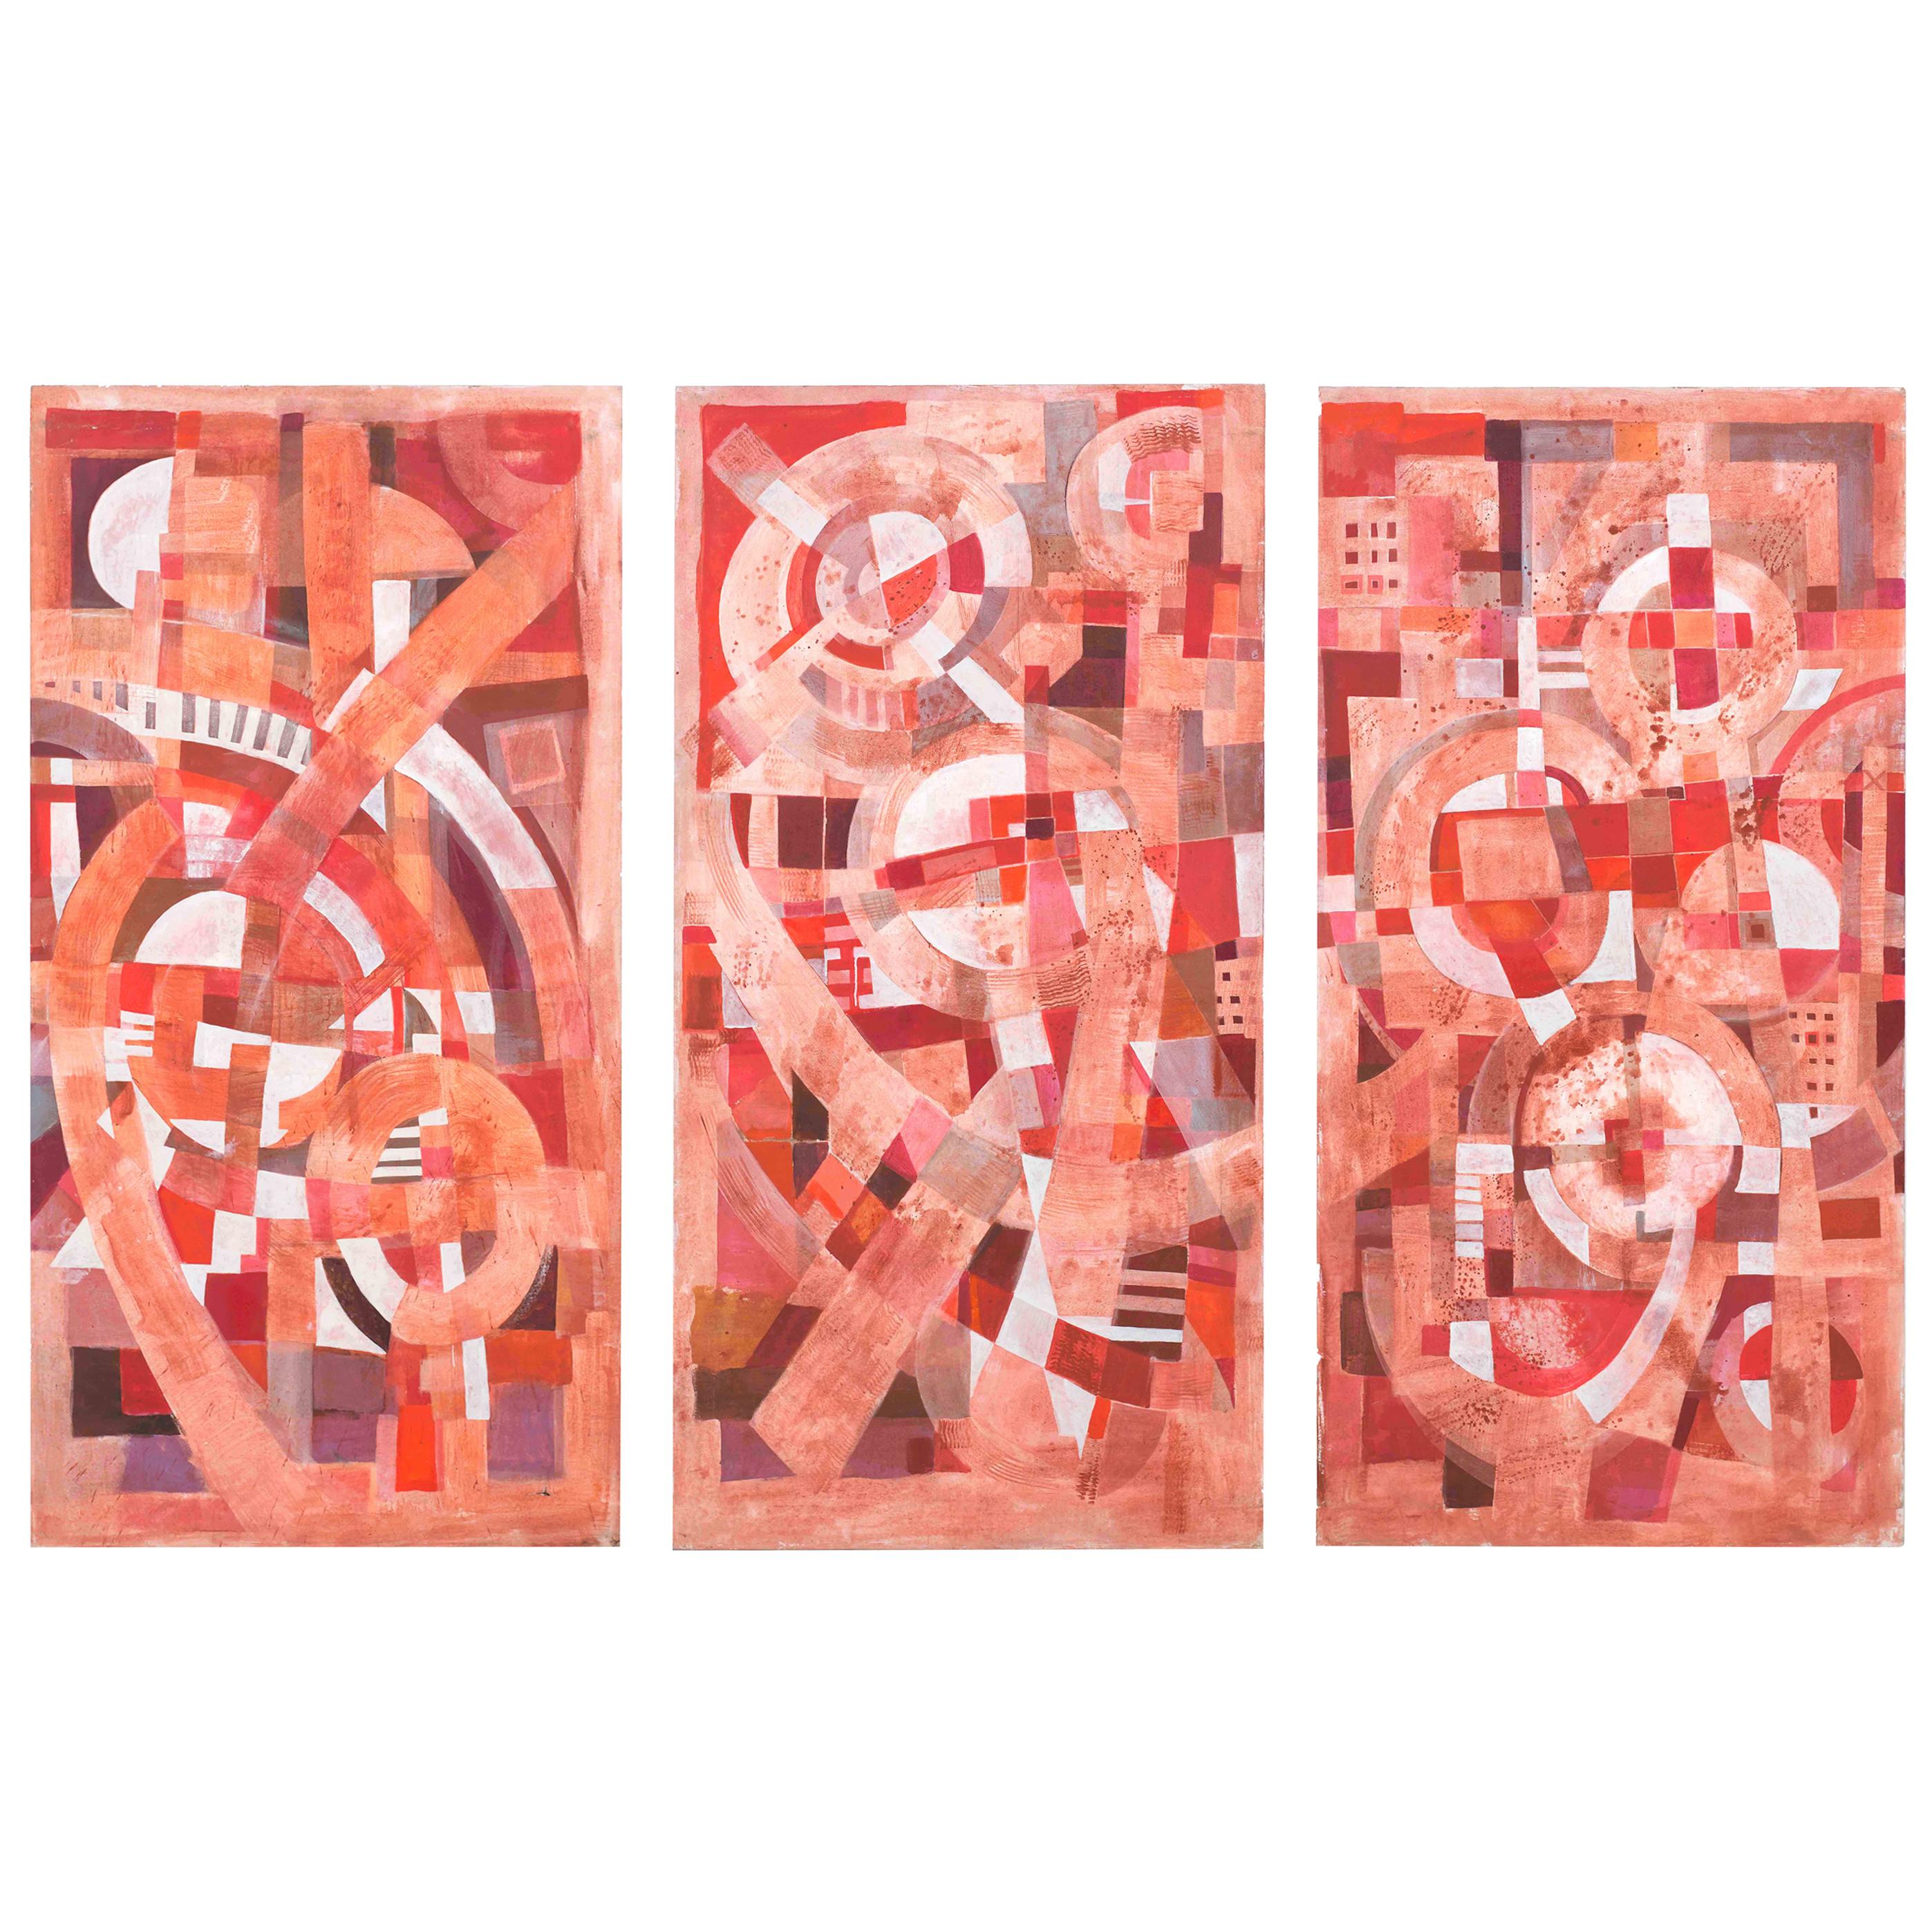 Abstraktes Triptychon von Tom John Goauche auf Leinwand (2010)